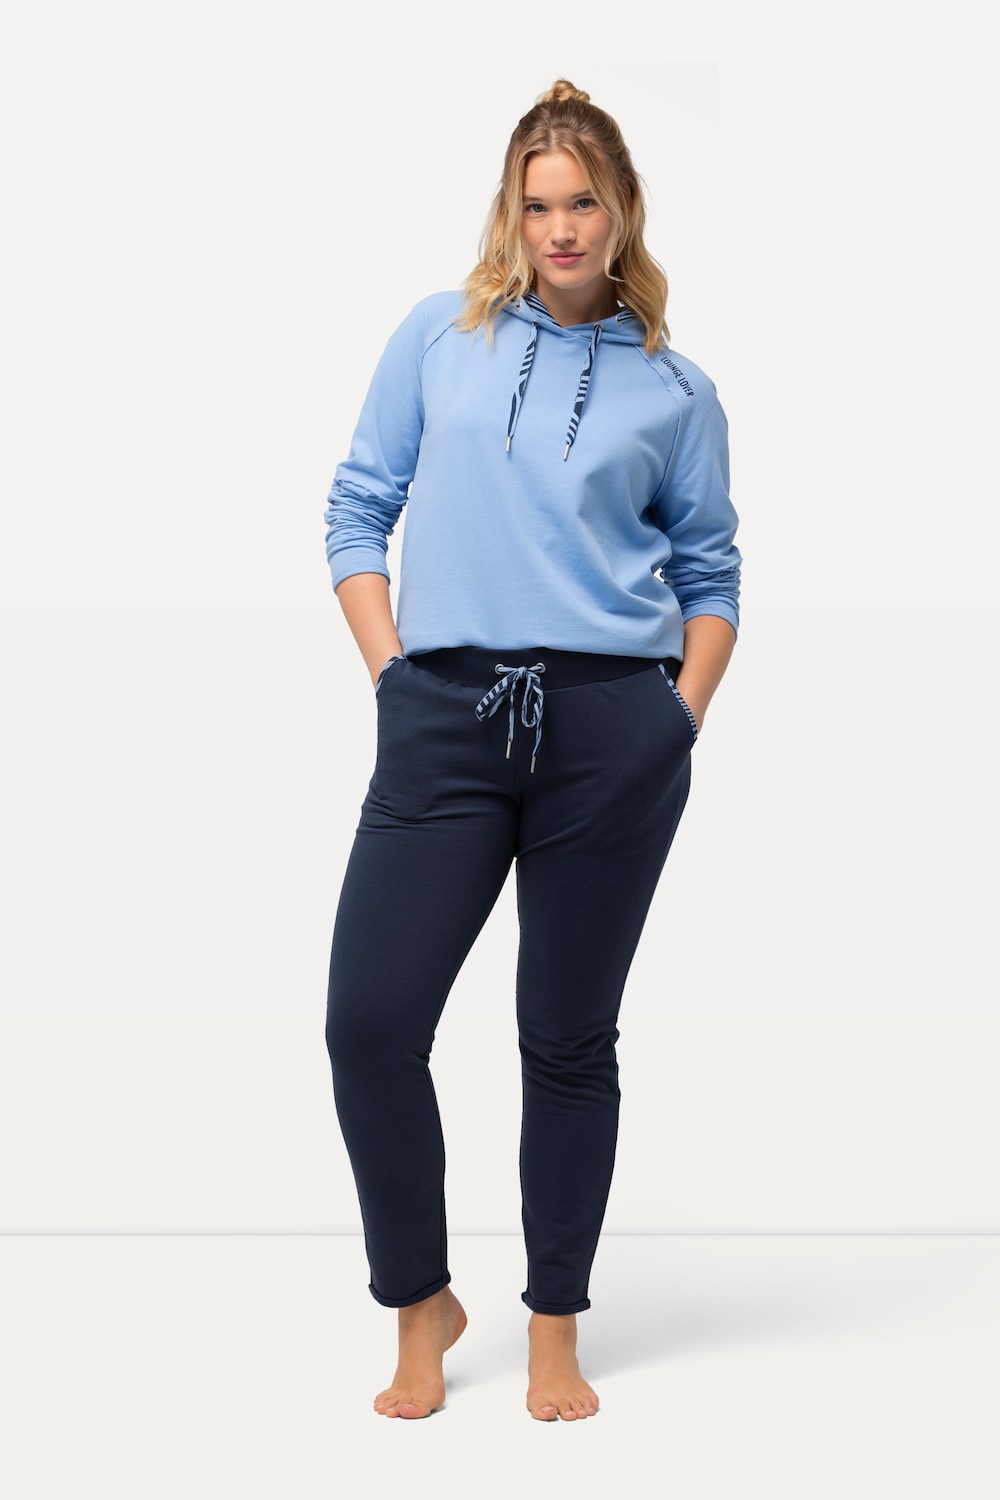 Große Größen Loungewear-Hose, Damen, blau, Größe: 50/52, Baumwolle/Polyester, Ulla Popken von Ulla Popken